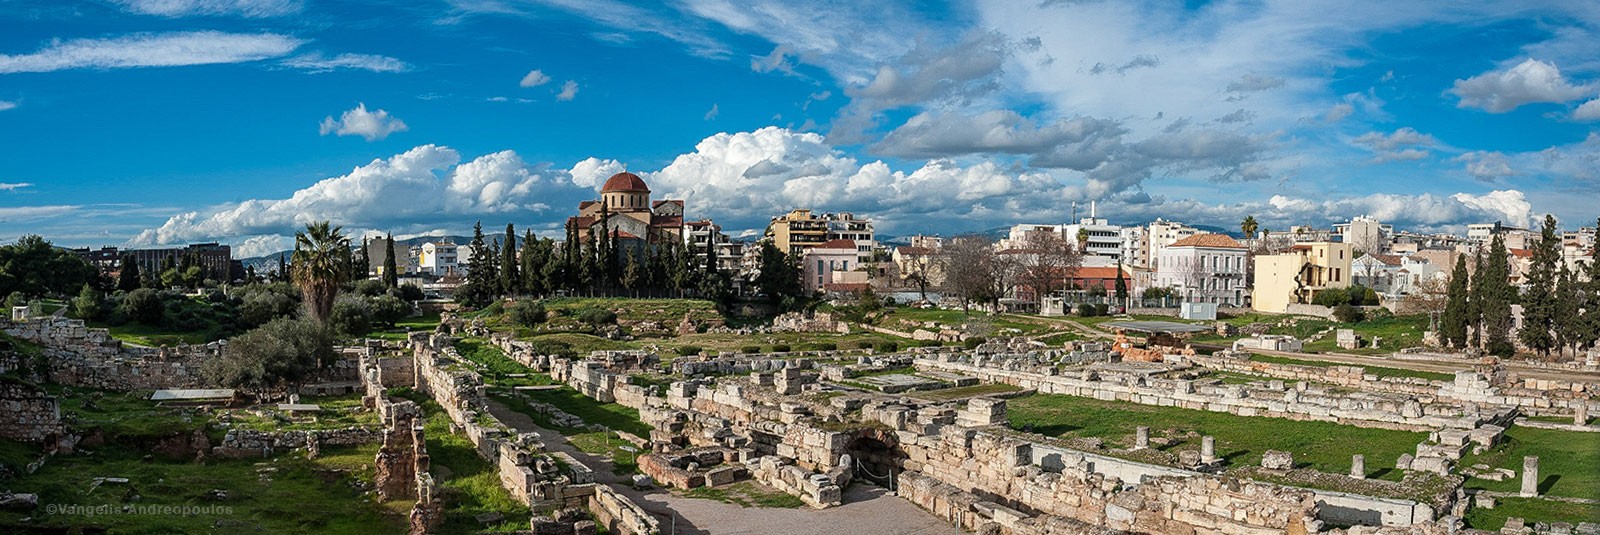 Kerameikos Ancient City and Cemetery: